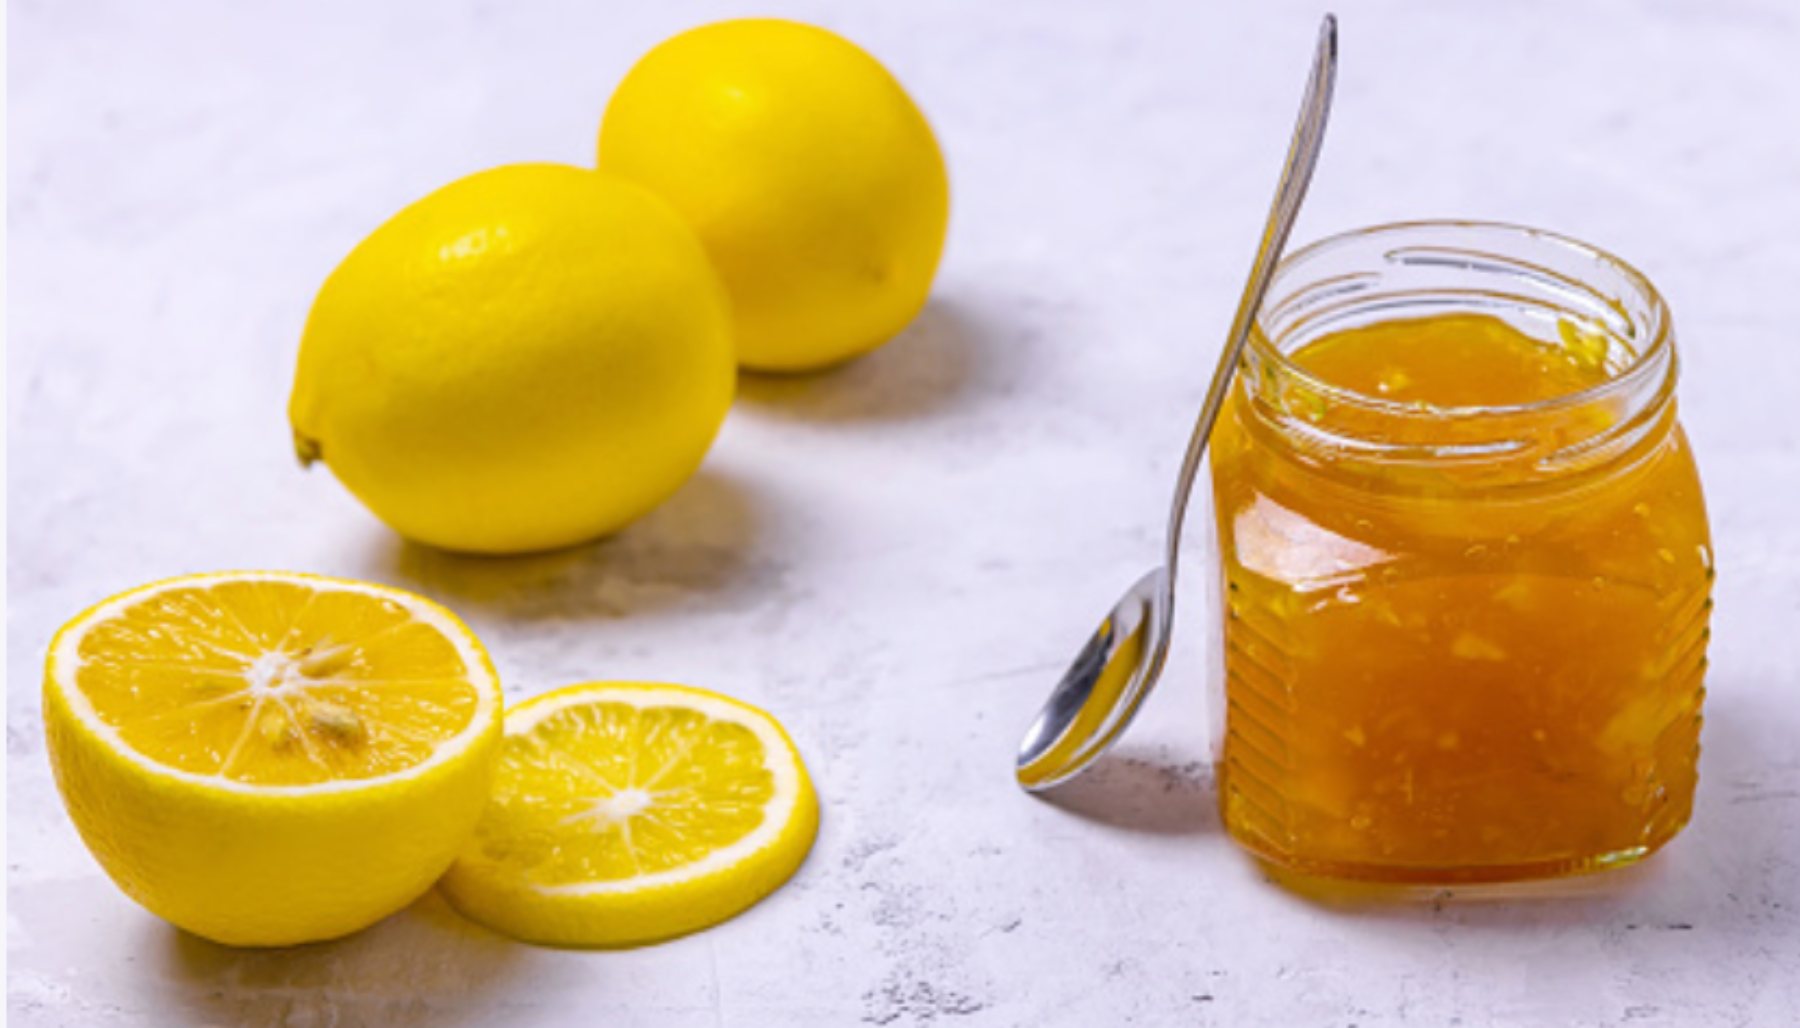 Receta de mermelada de limón casera paso a paso 4